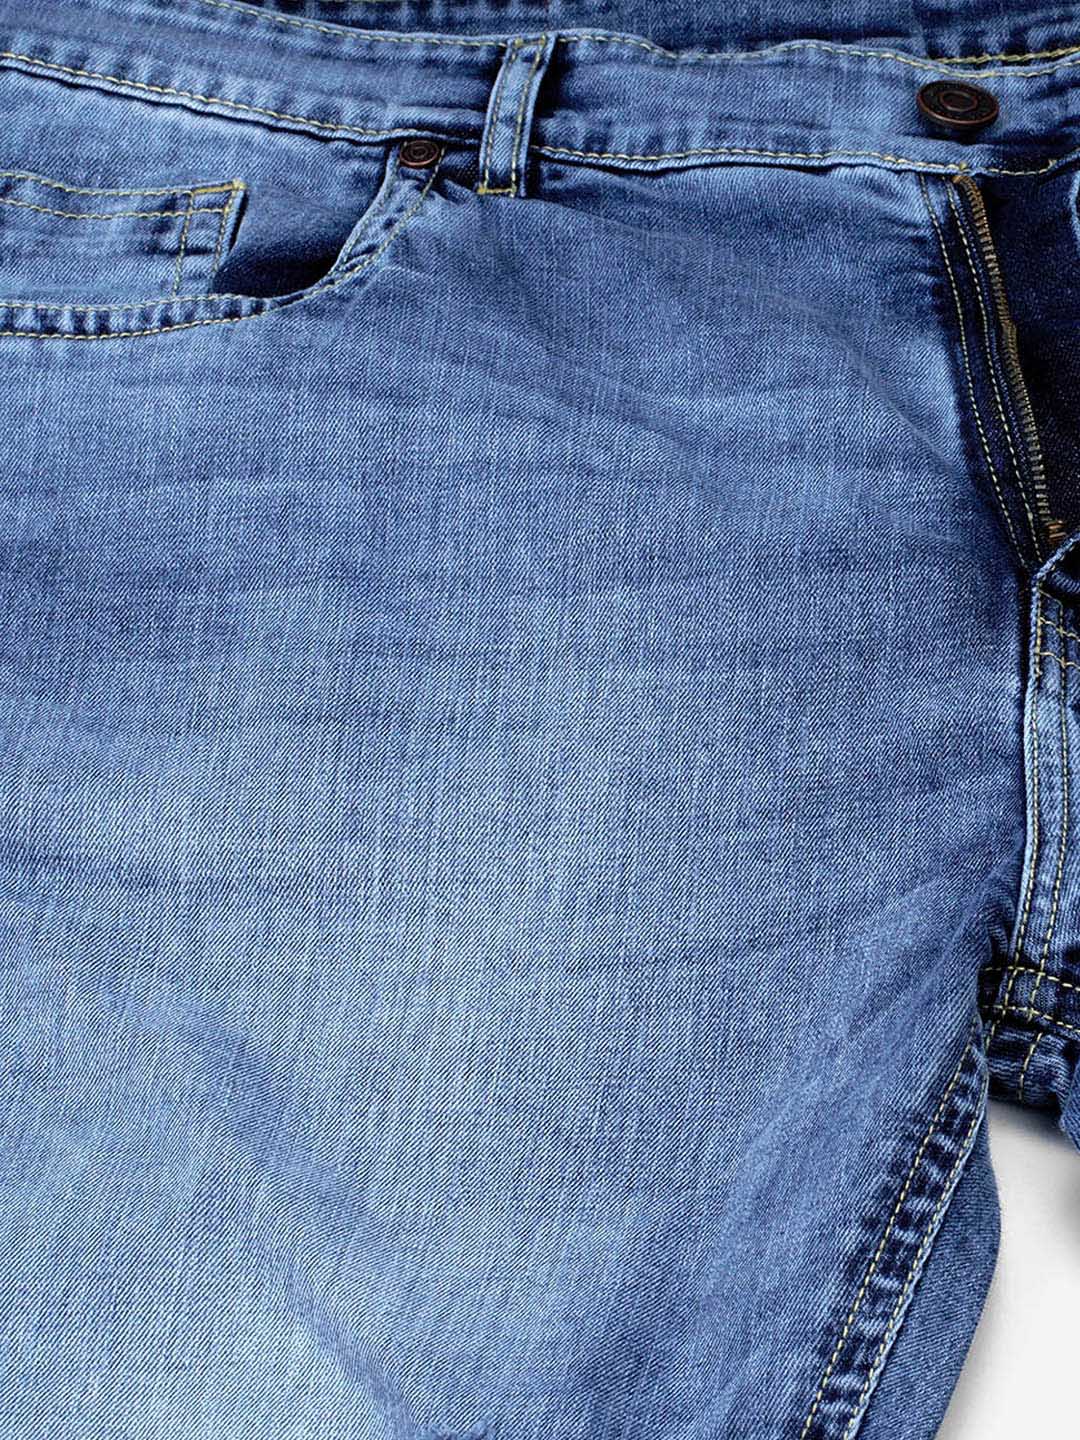 bottomwear/jeans/JPJ12127/jpj12127-2.jpg